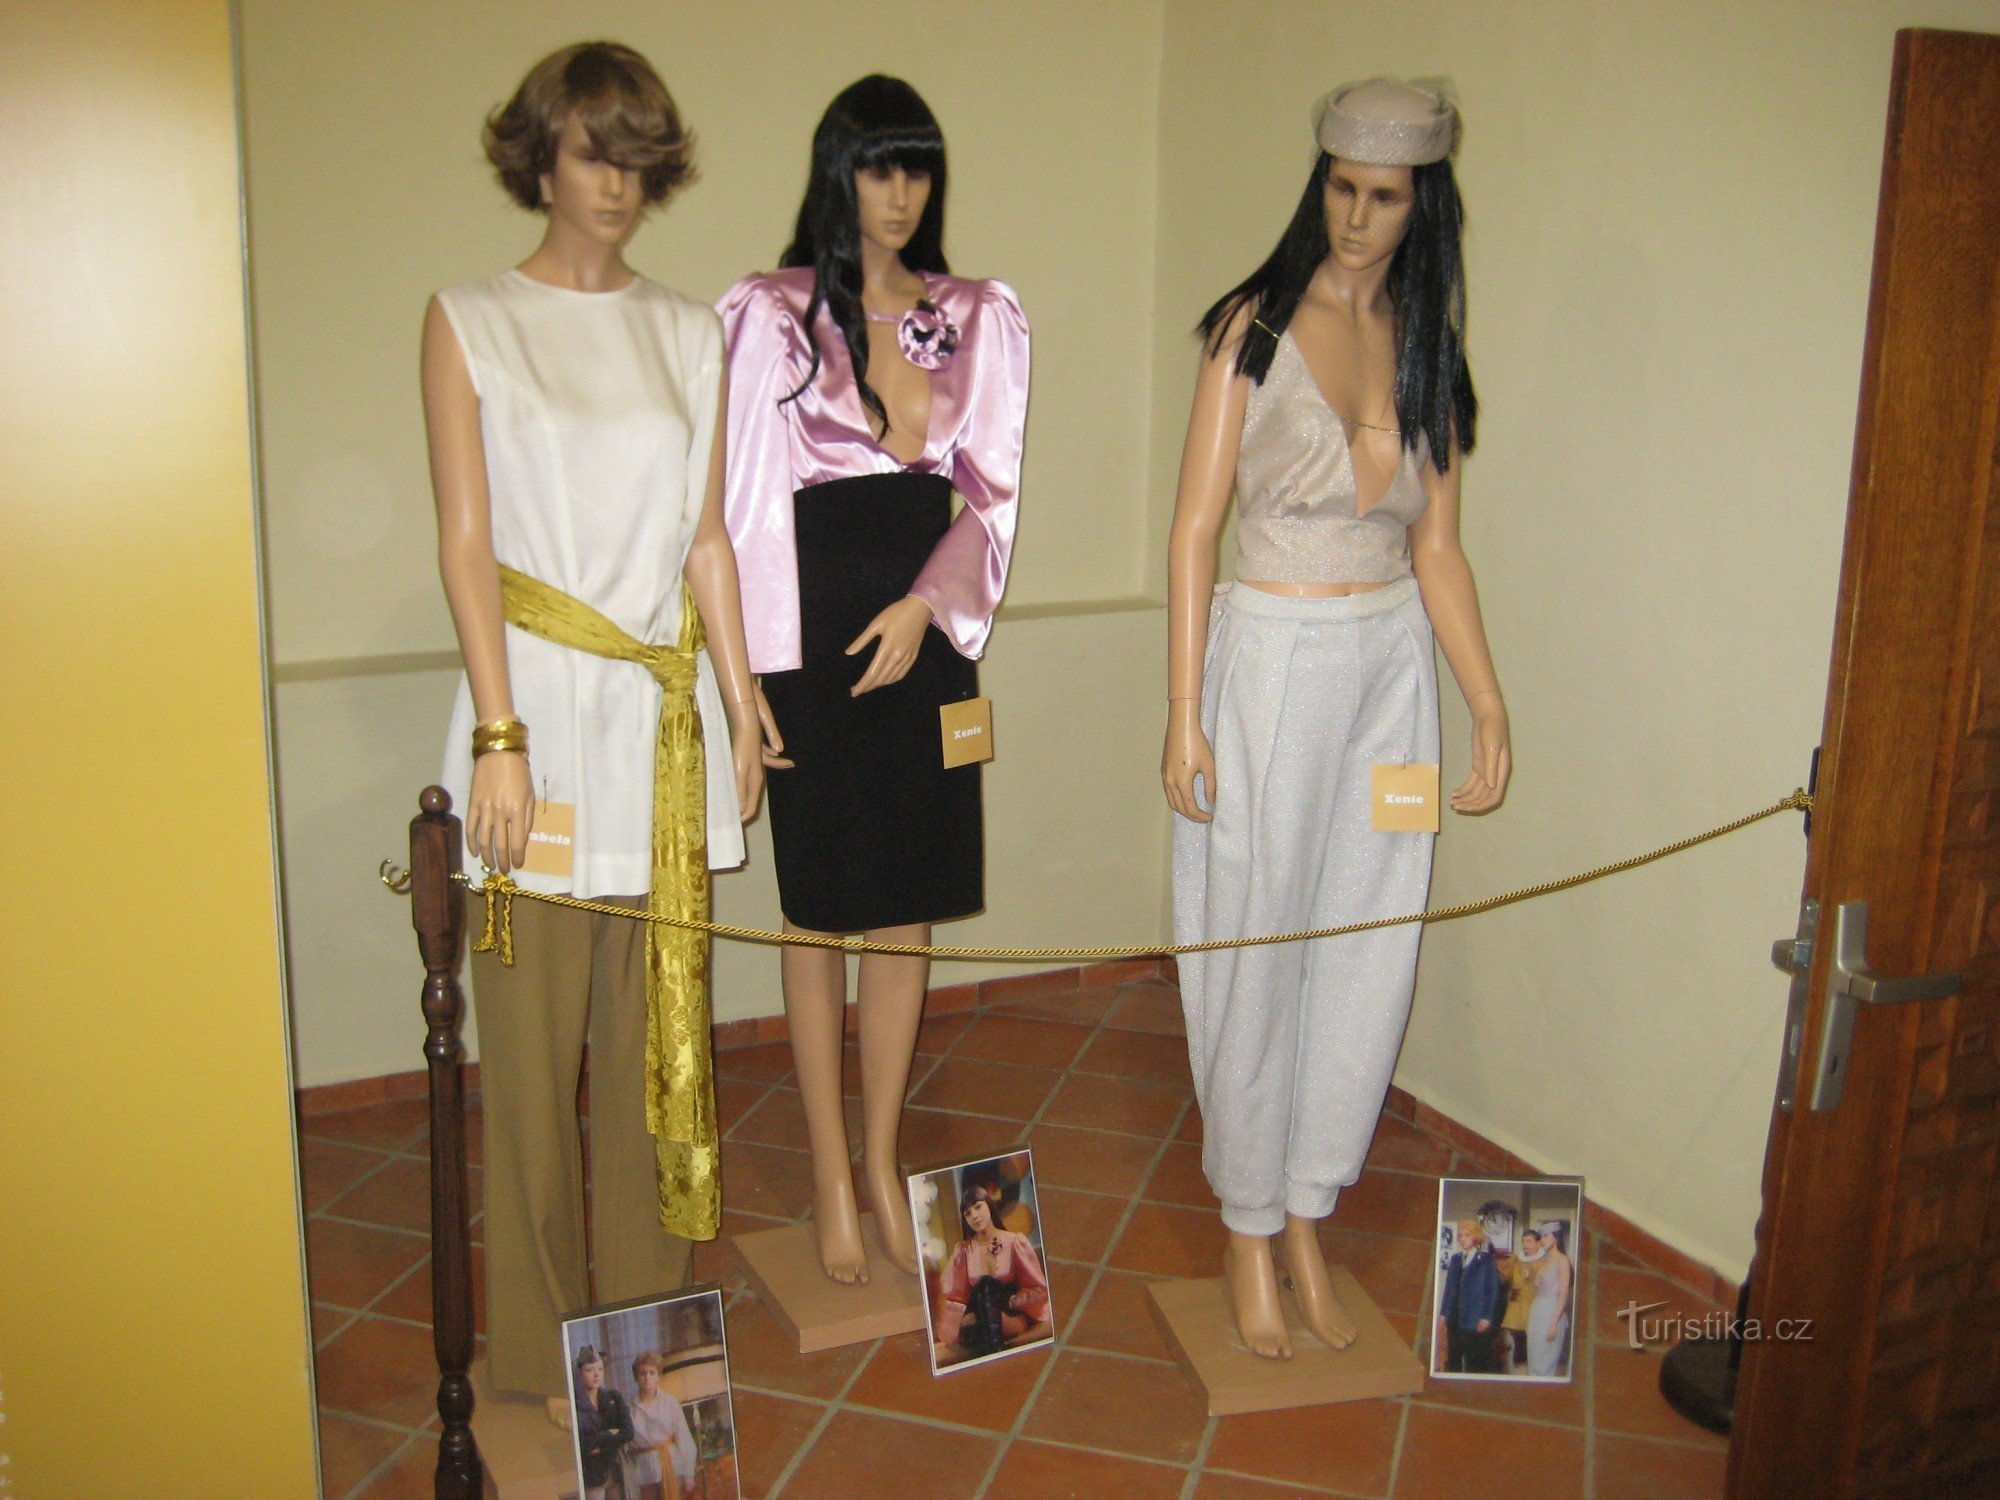 阿拉贝拉 - 系列服装展览 - 索科洛夫博物馆